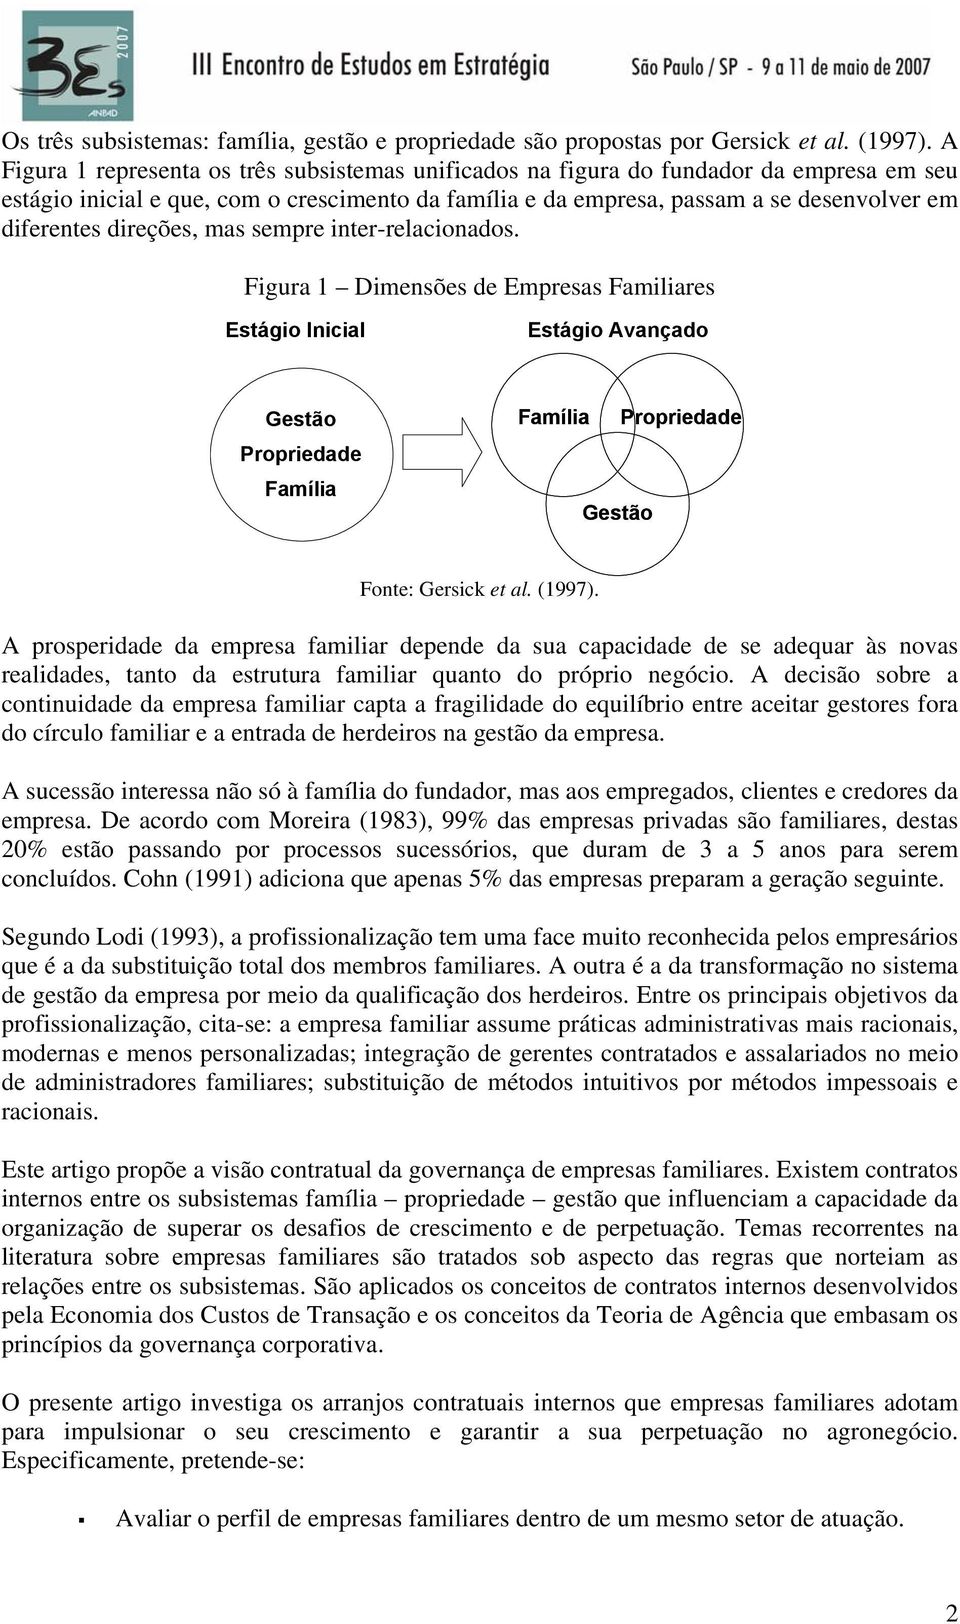 direções, mas sempre inter-relacionados. Figura 1 Dimensões de Empresas Familiares Estágio Inicial Estágio Avançado Gestão Propriedade Família Família Propriedade Gestão Fonte: Gersick et al. (1997).